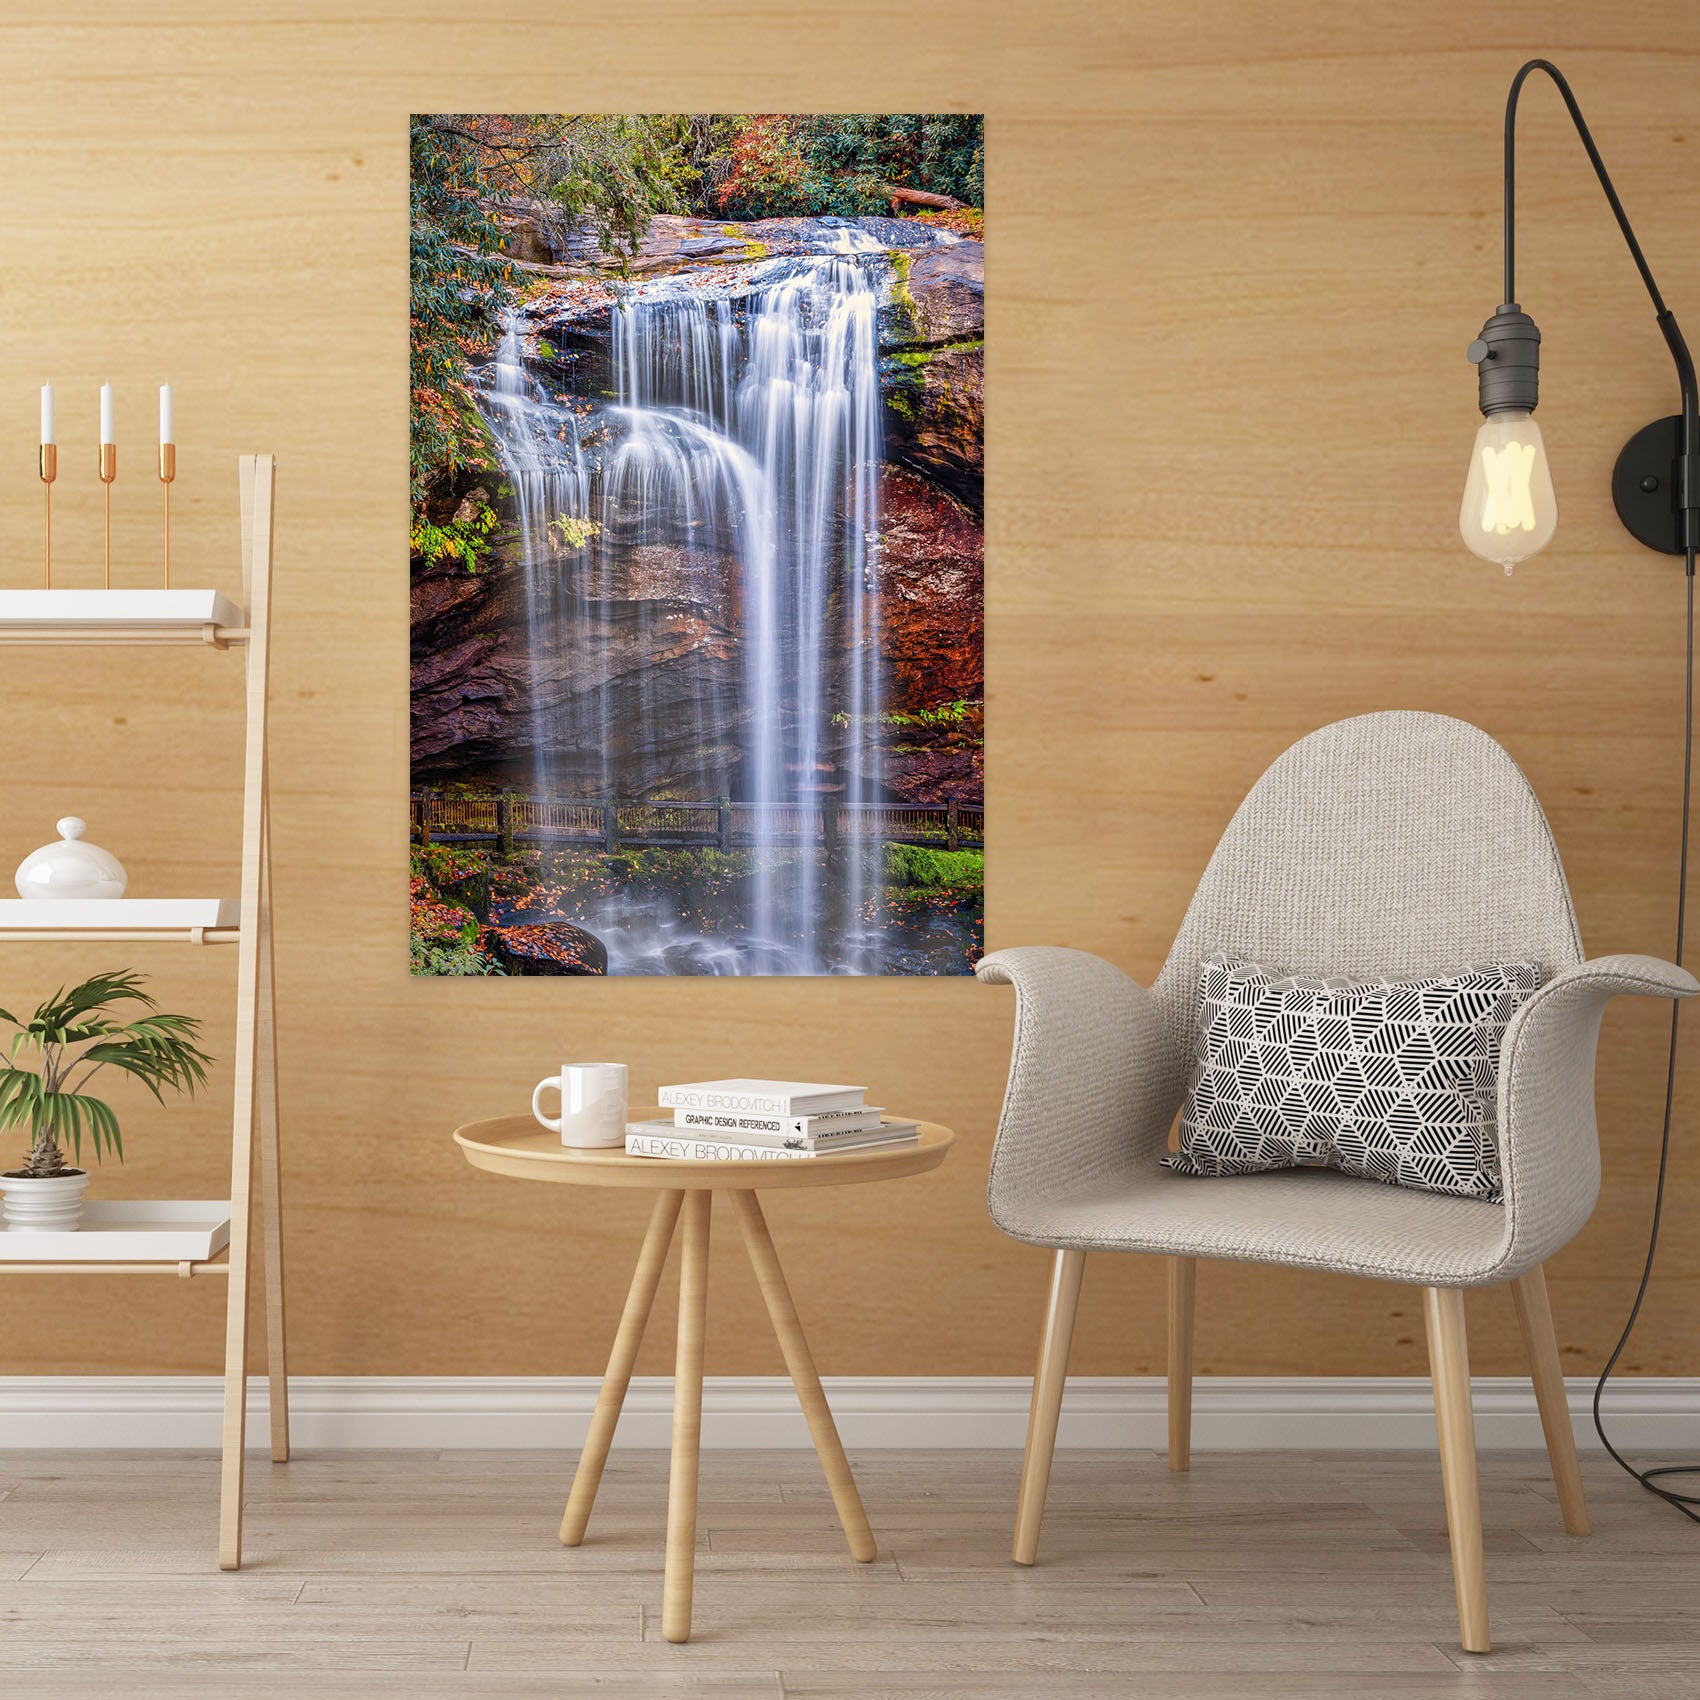 3D Waterfall Rock 4059 Beth Sheridan Wall Sticker